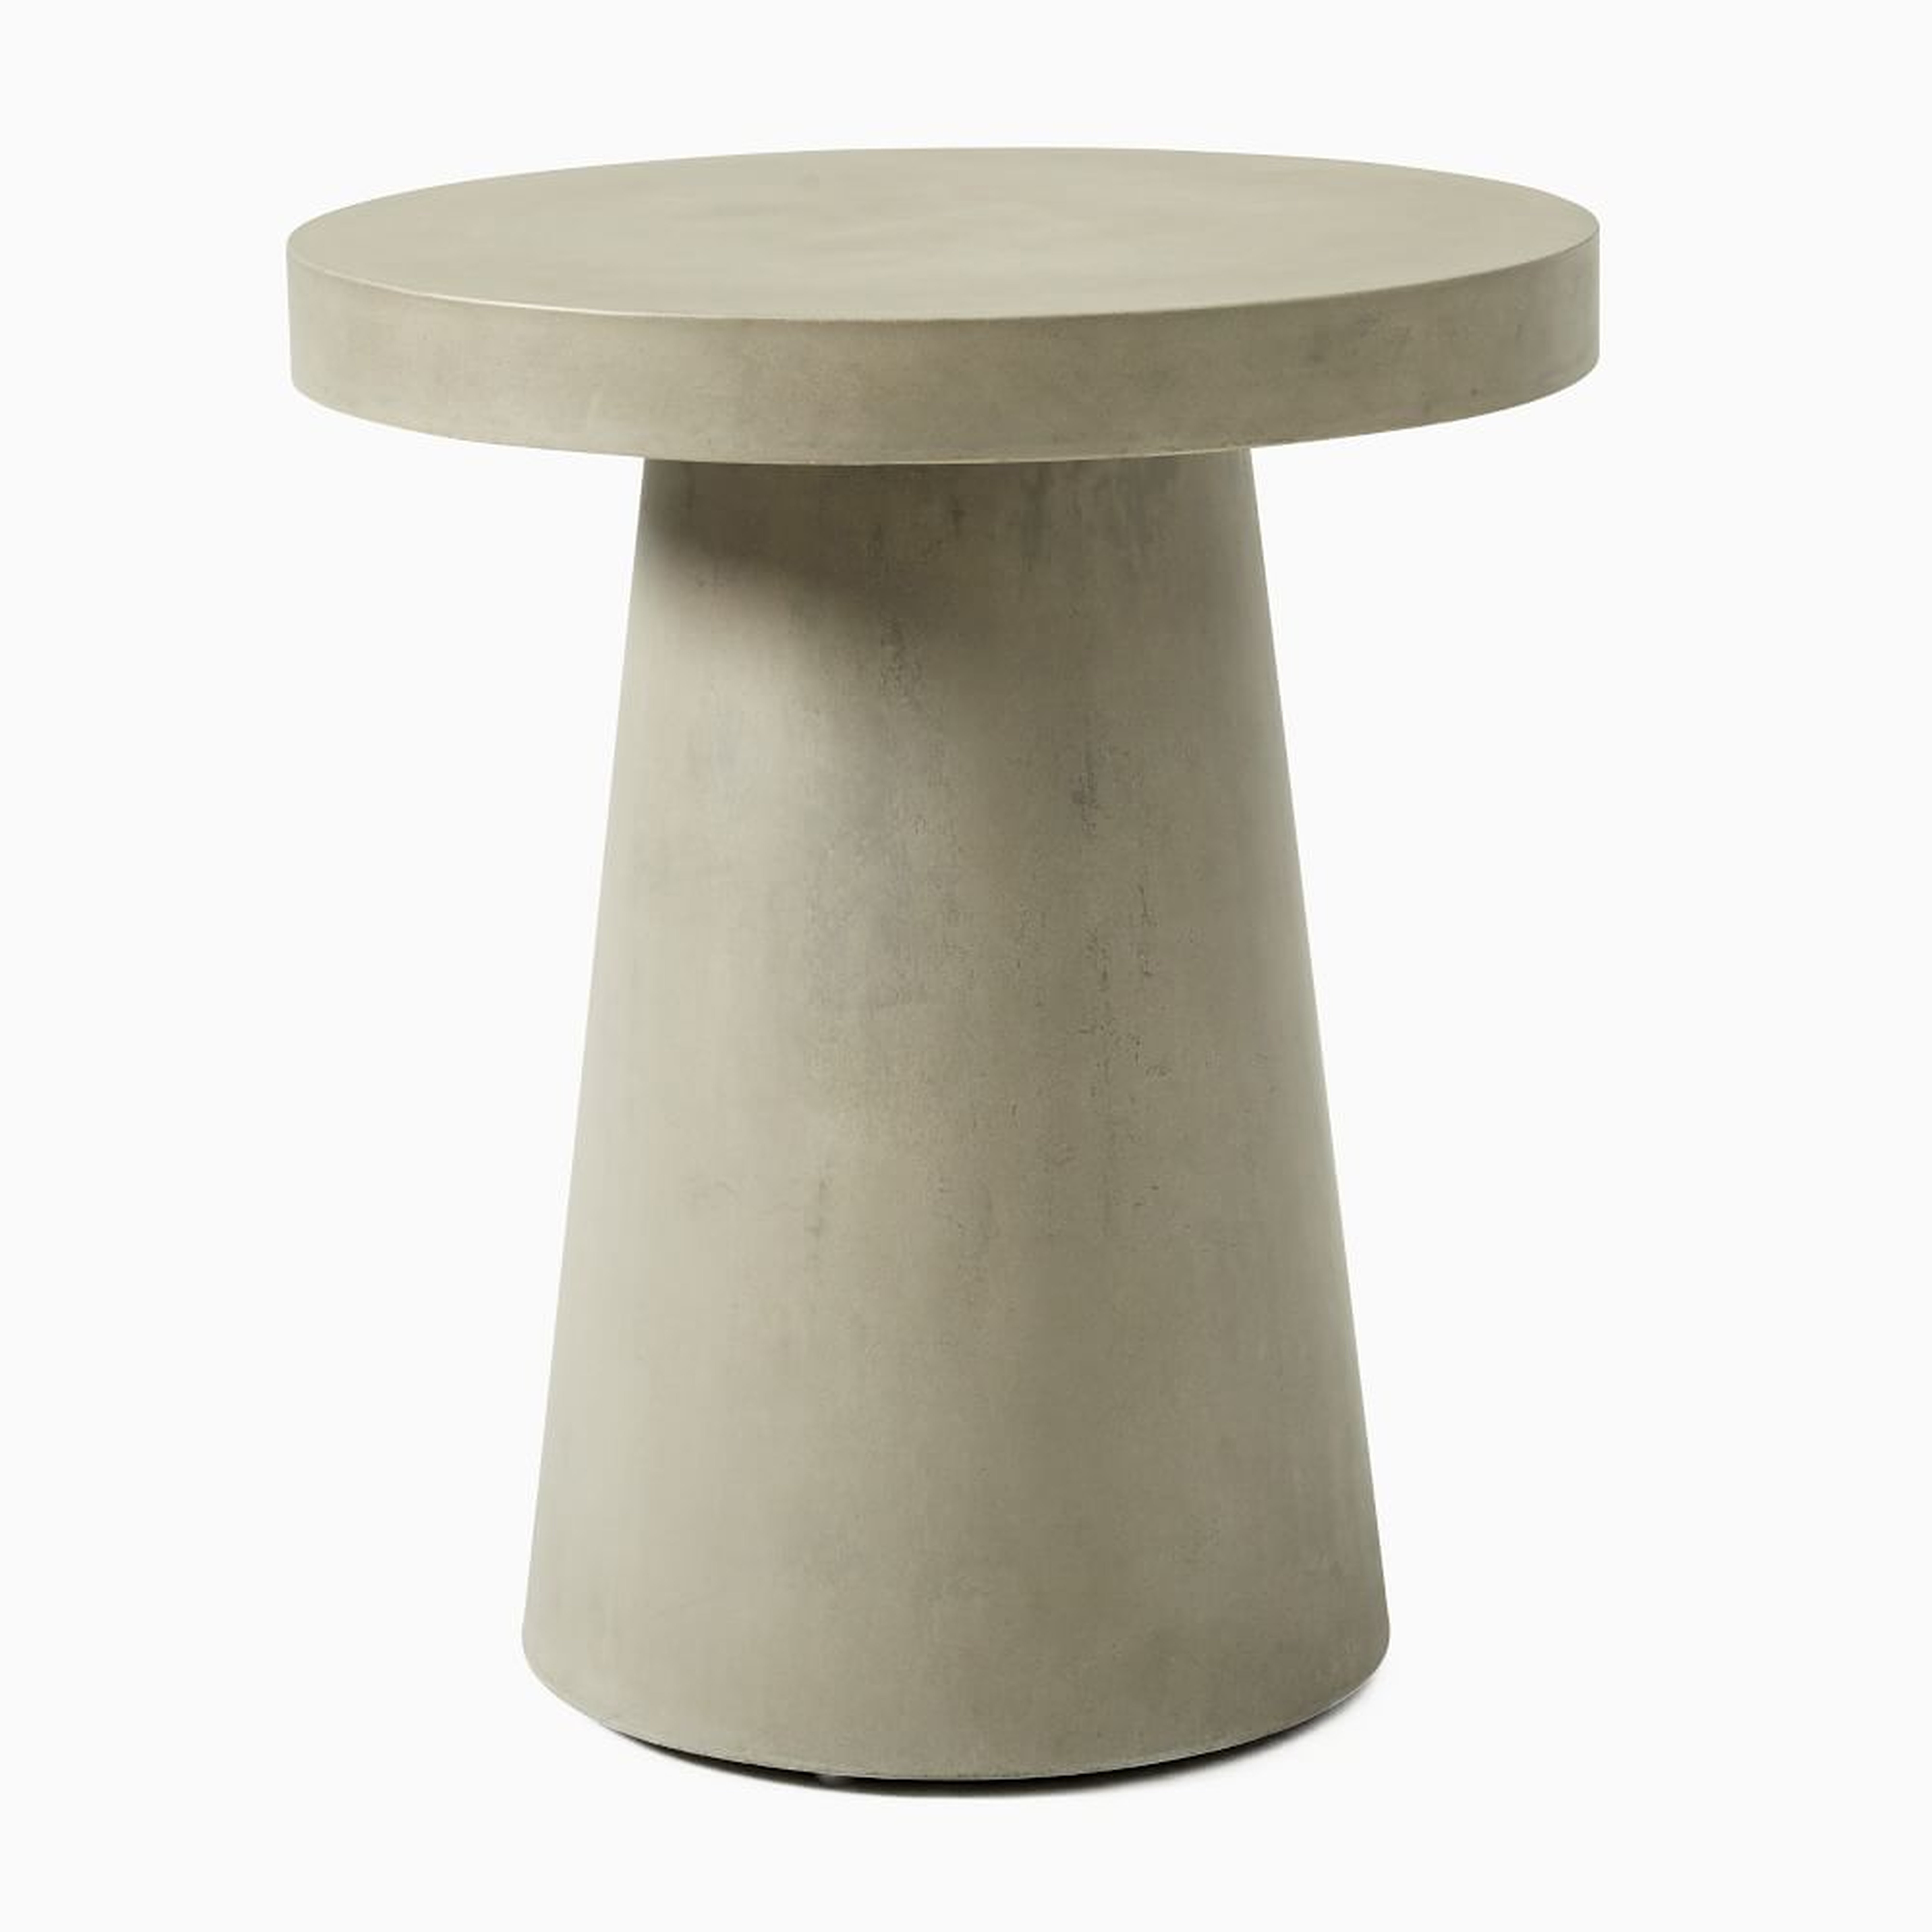 Concrete Round Pedestal Side Table, Concrete Gray - West Elm